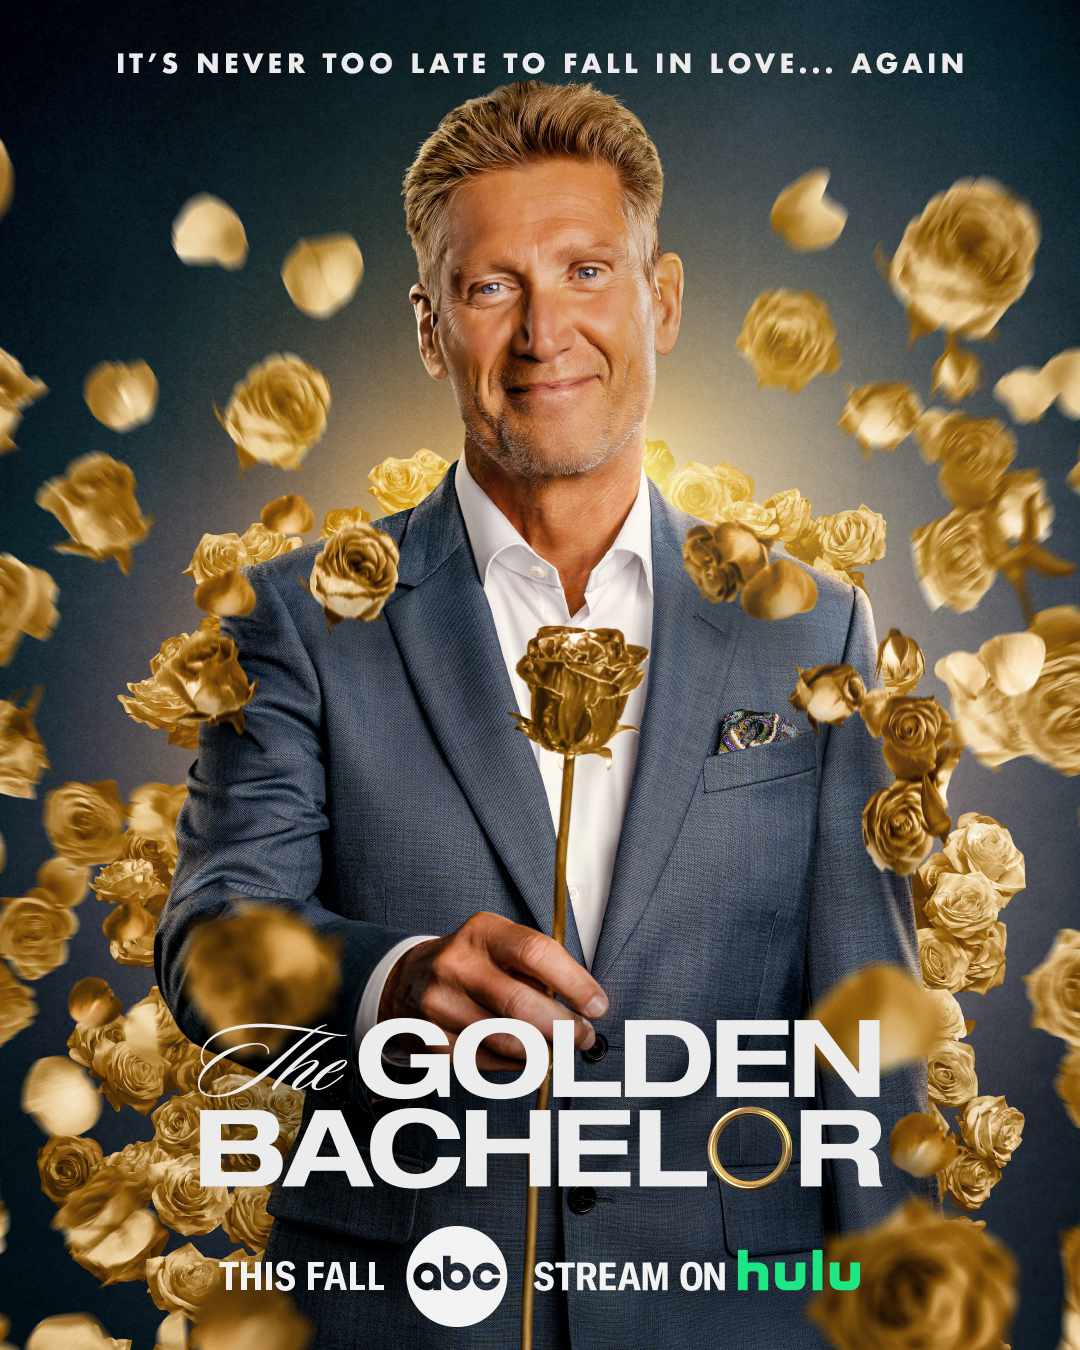 Golden Bachelor poster